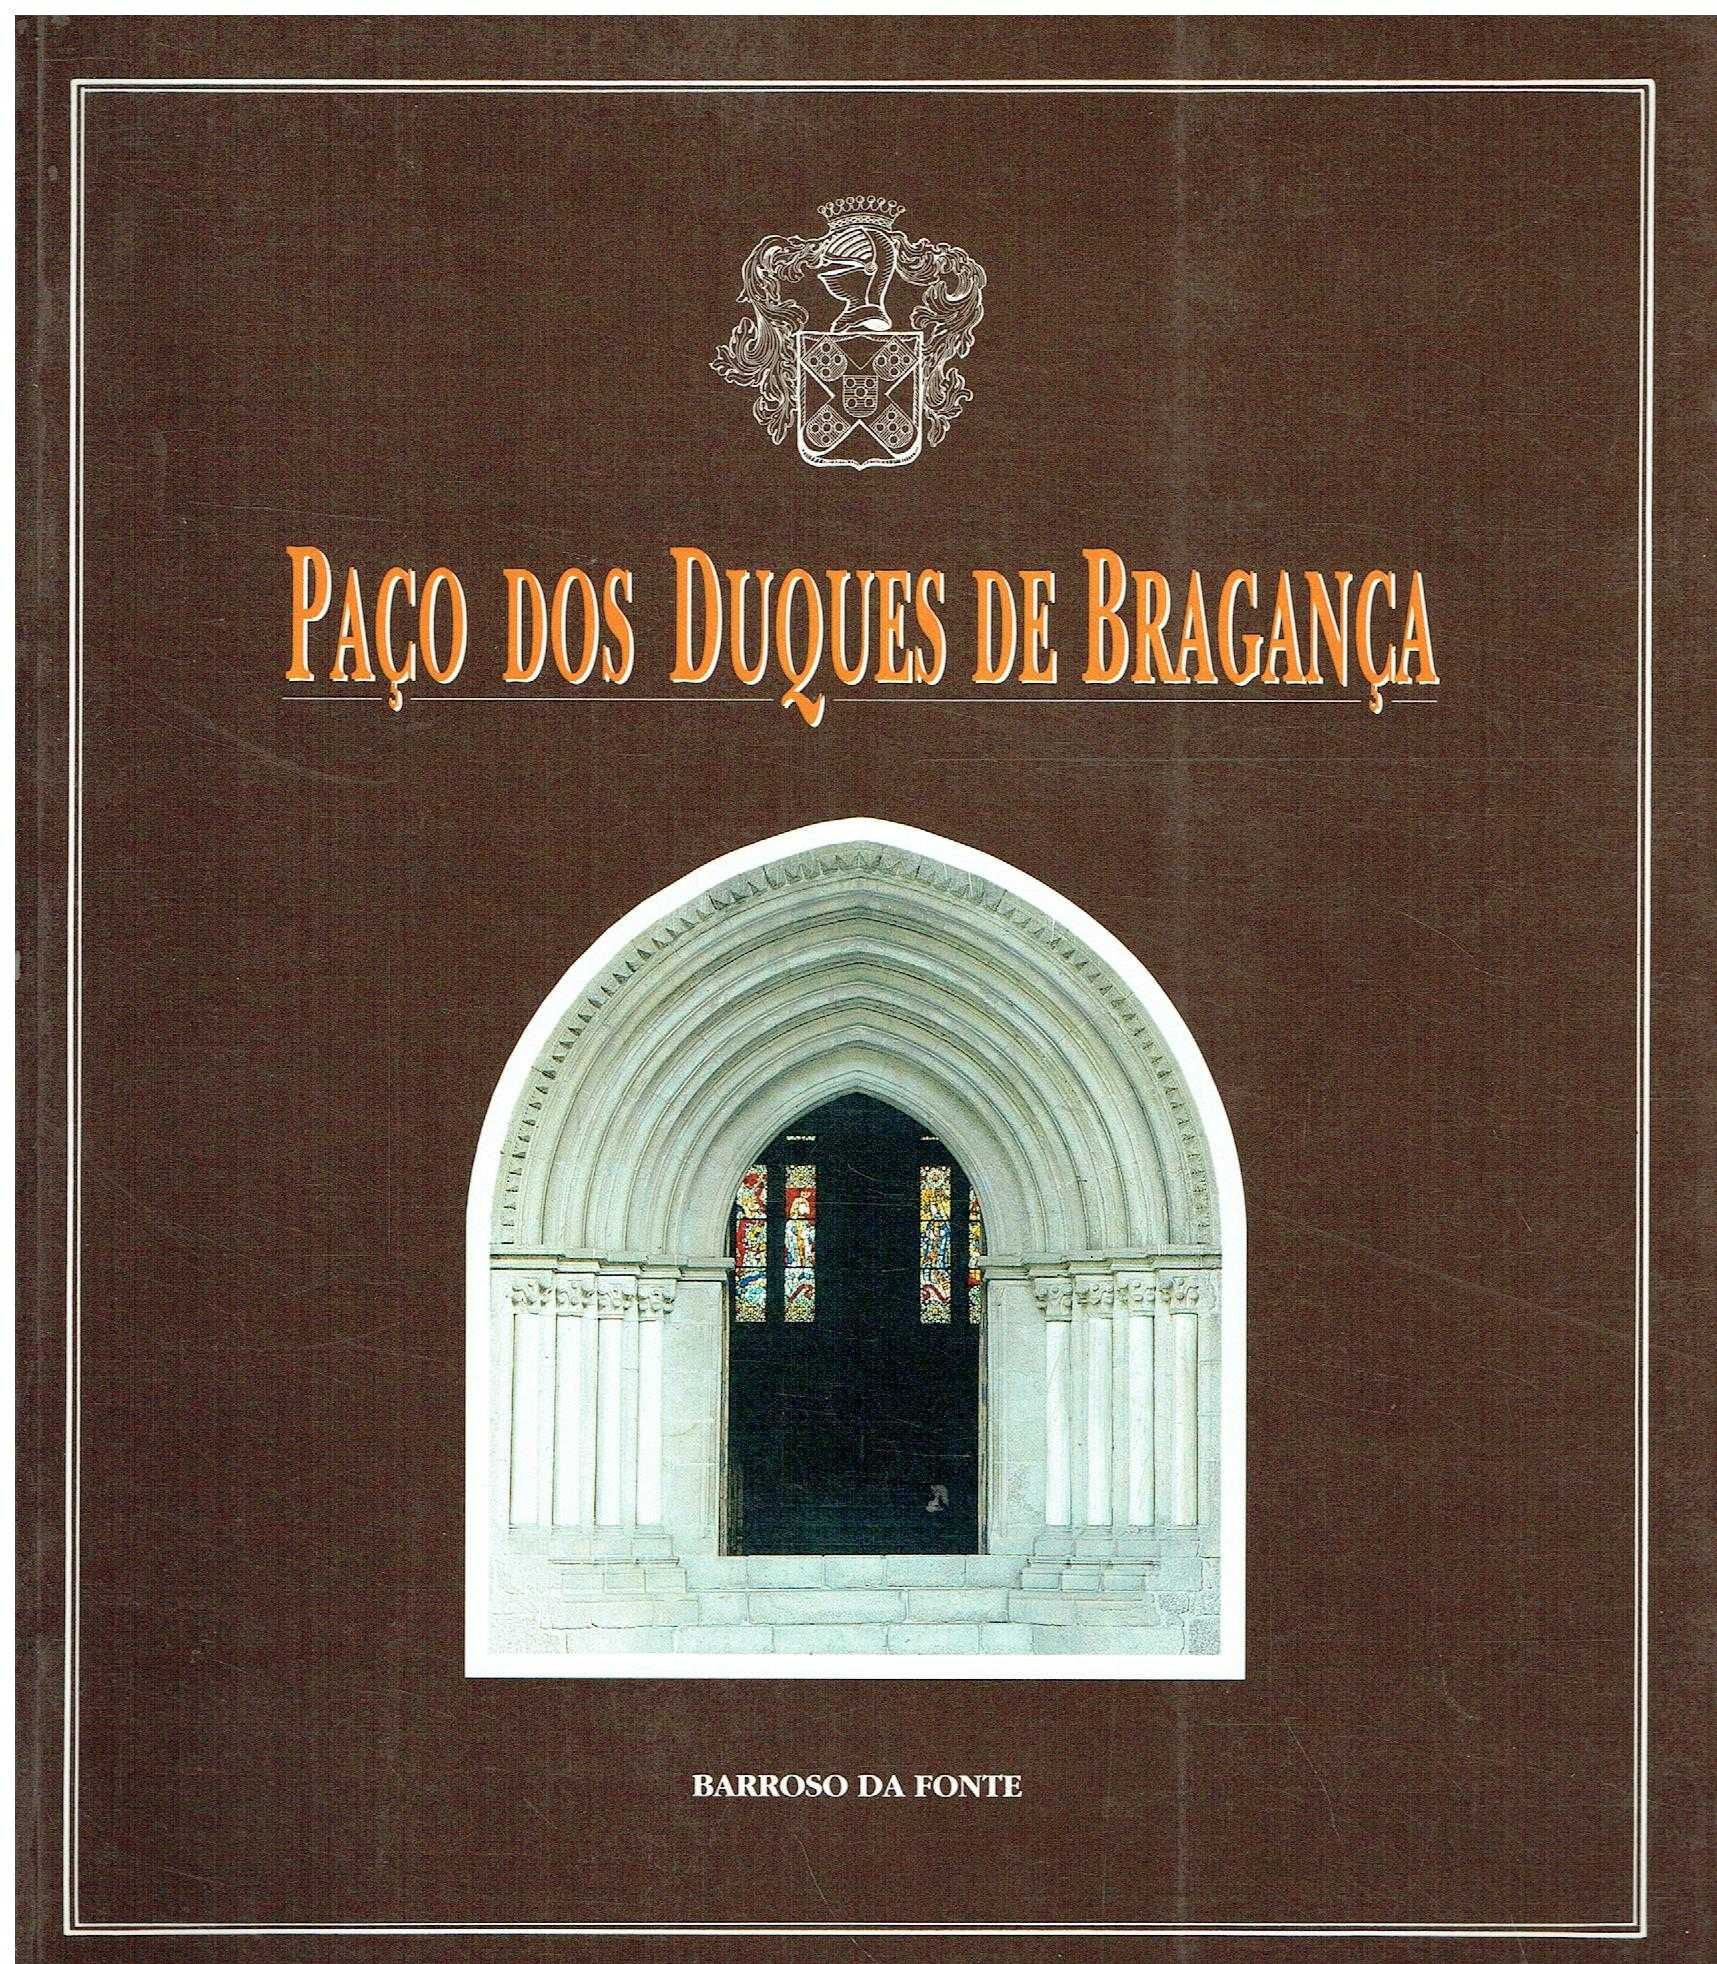 5772

Paço dos Duques de Bragança  
por Barroso da Fonte